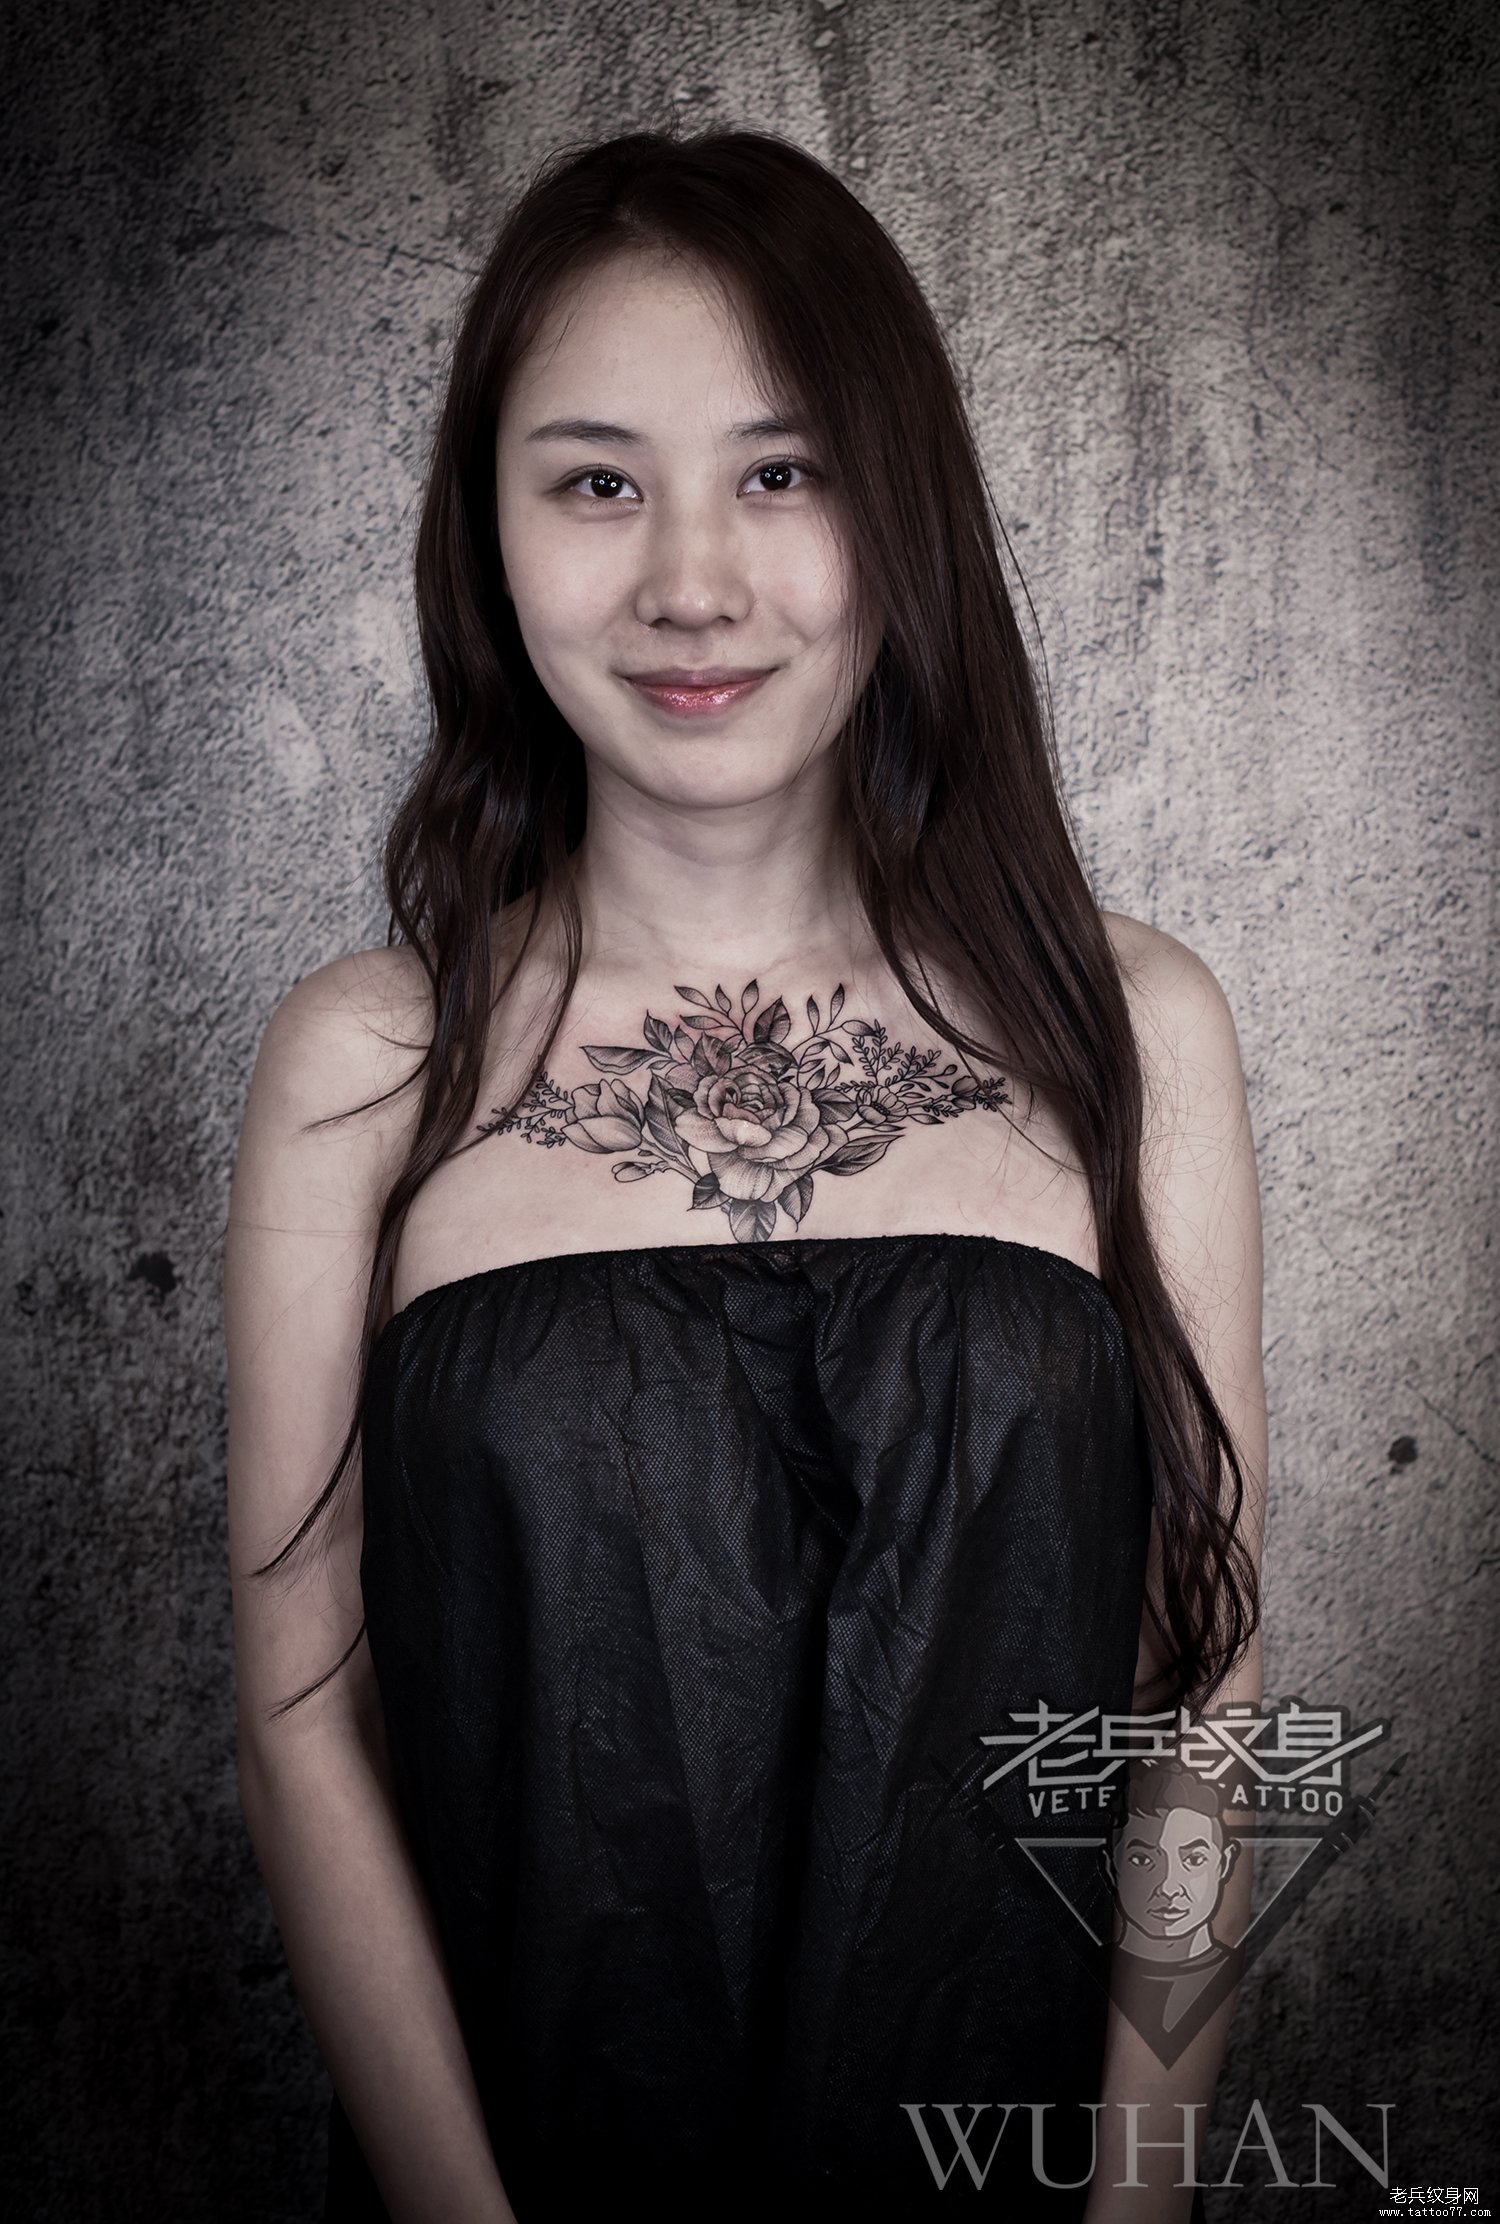 分享33张性感女性胸下各种纹身风格的纹身作品图片 - 胸部纹身图案大全 武汉老兵纹身